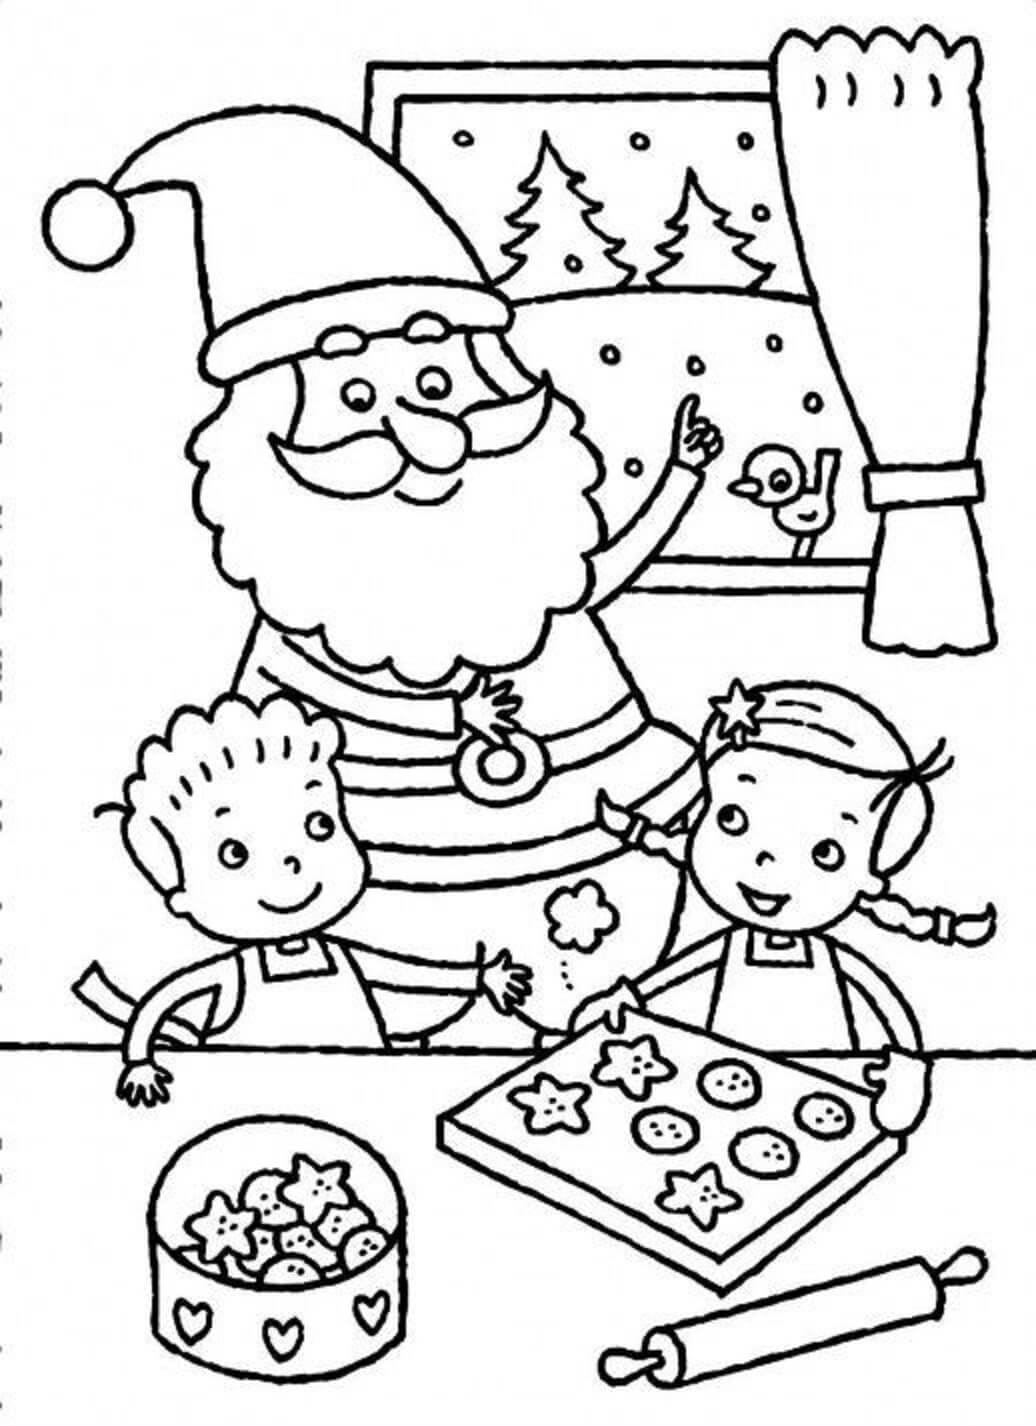 Der Weihnachtsmann und Zwei Kinder Backen Zusammen Kekse